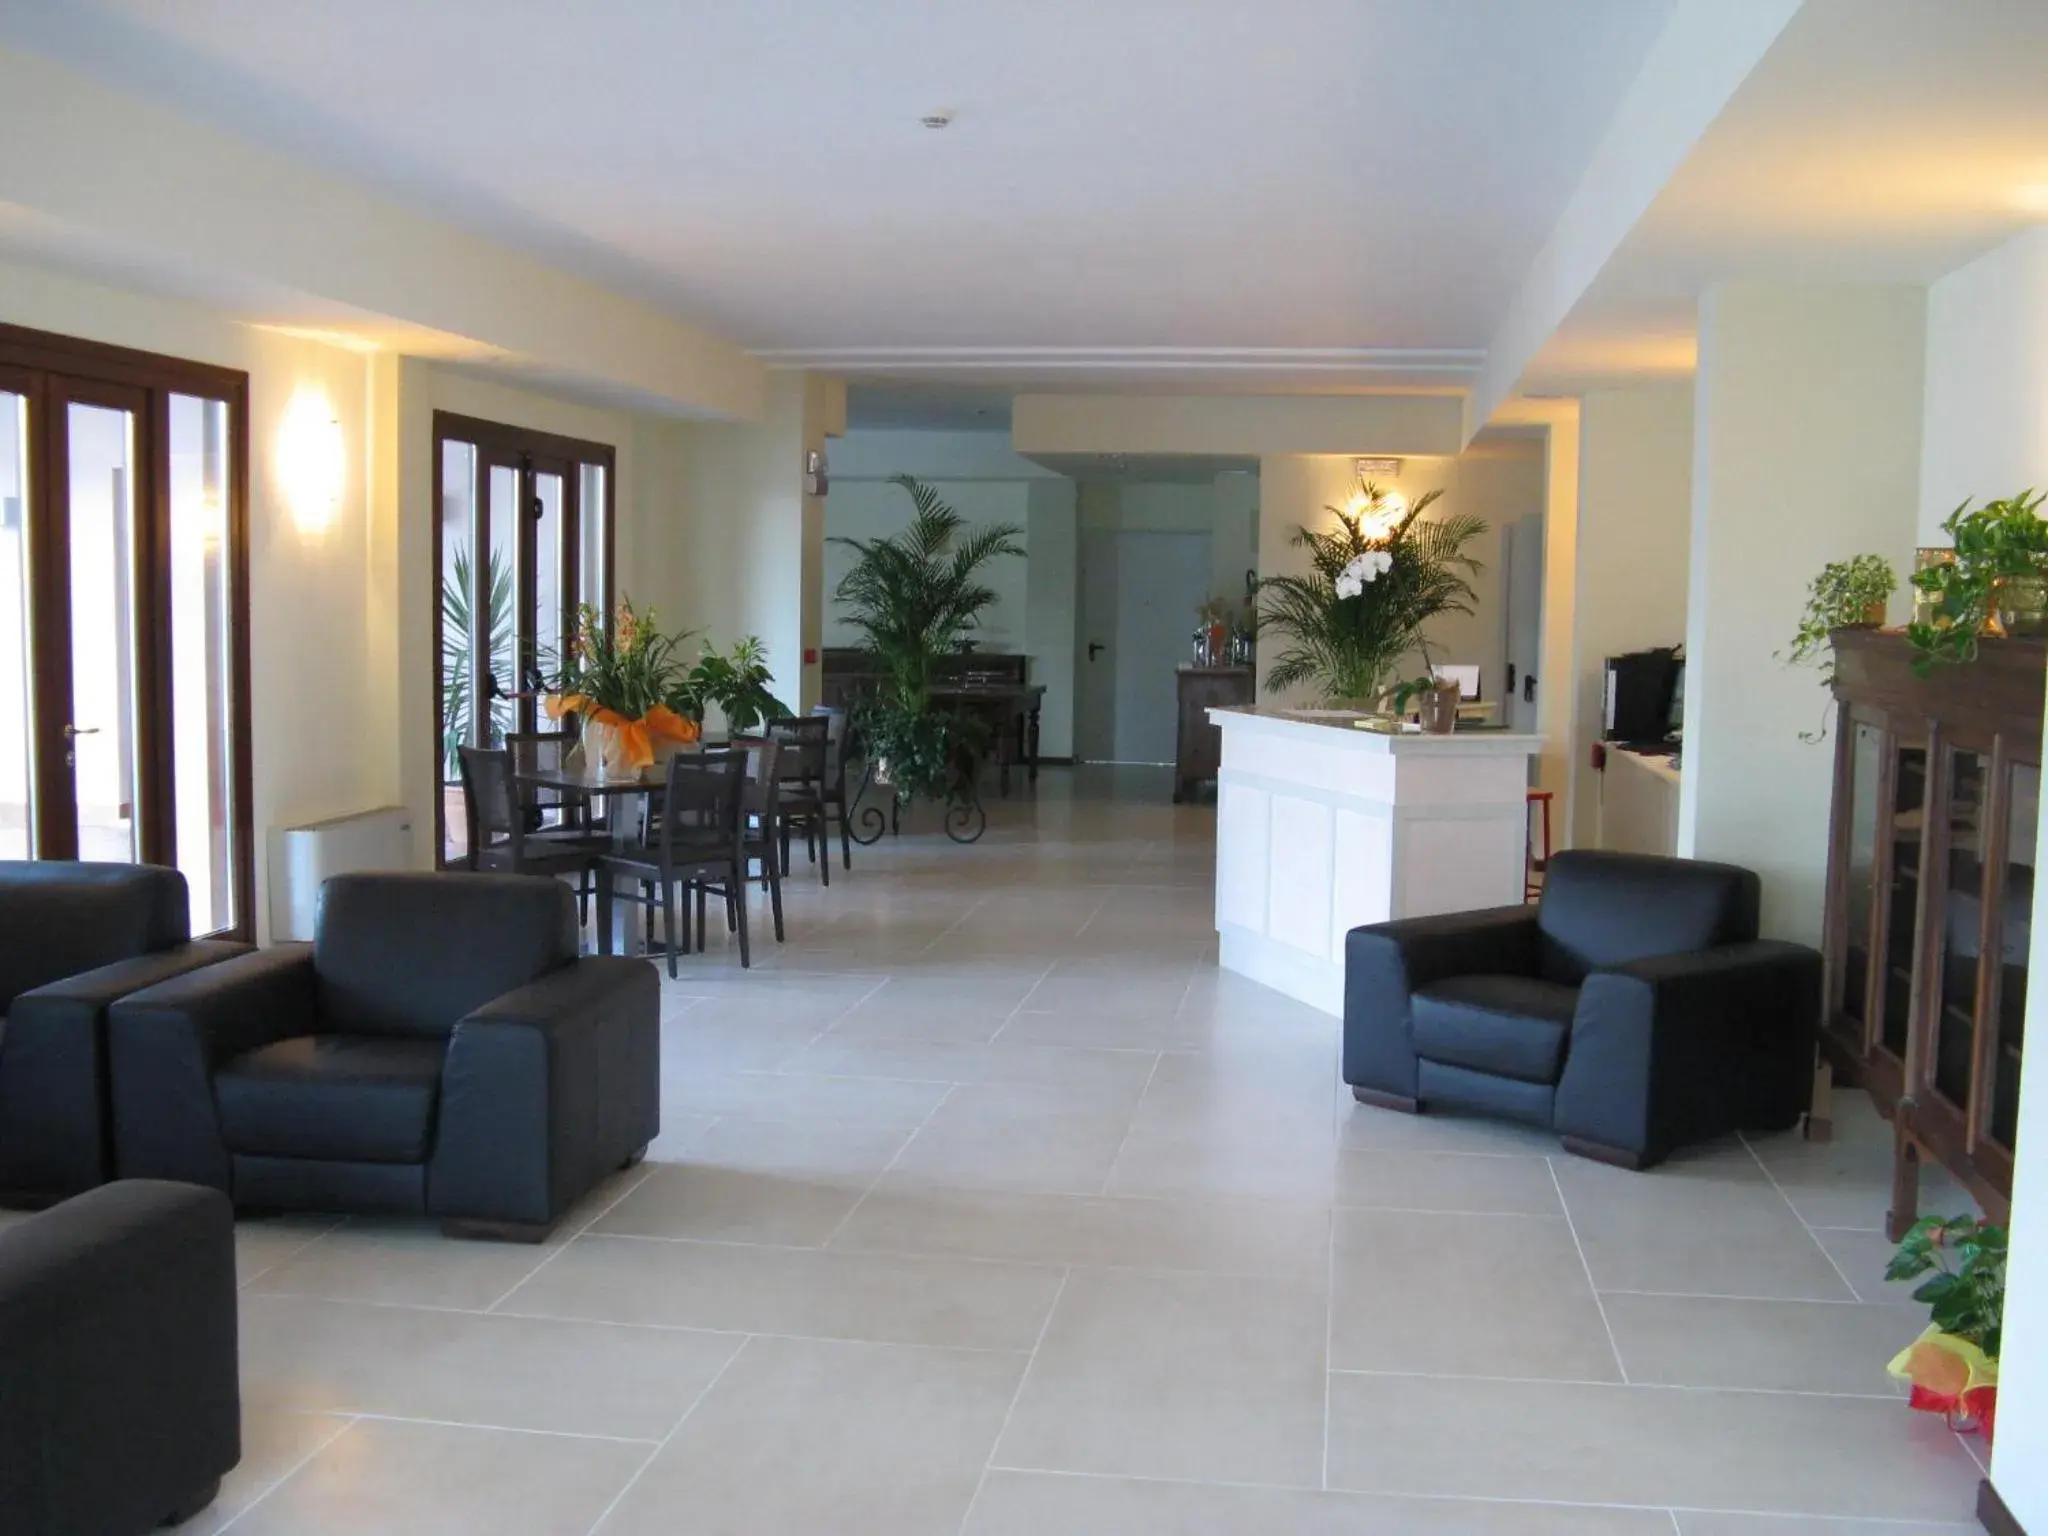 Lobby or reception, Lobby/Reception in International Hotel